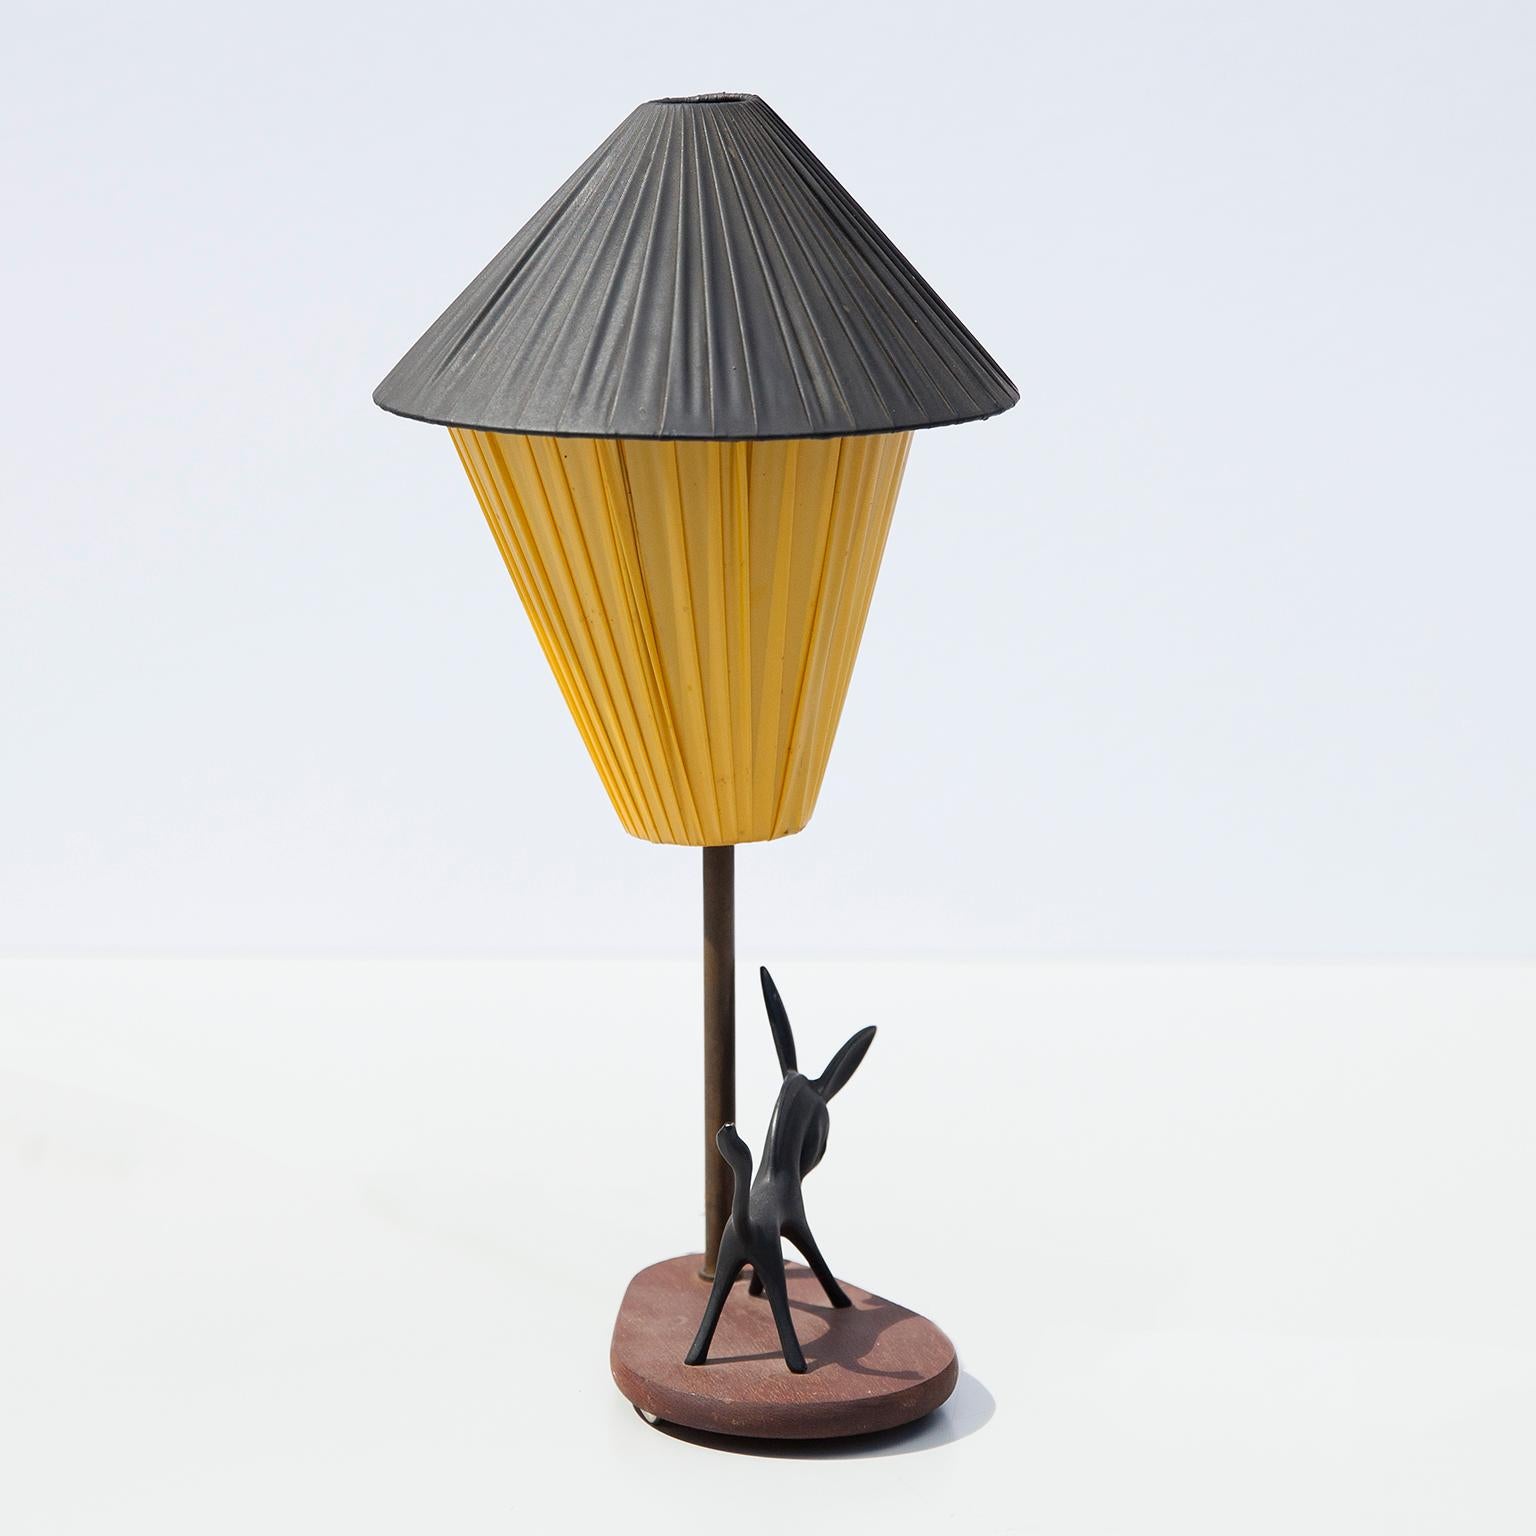 craftsman lamp shades